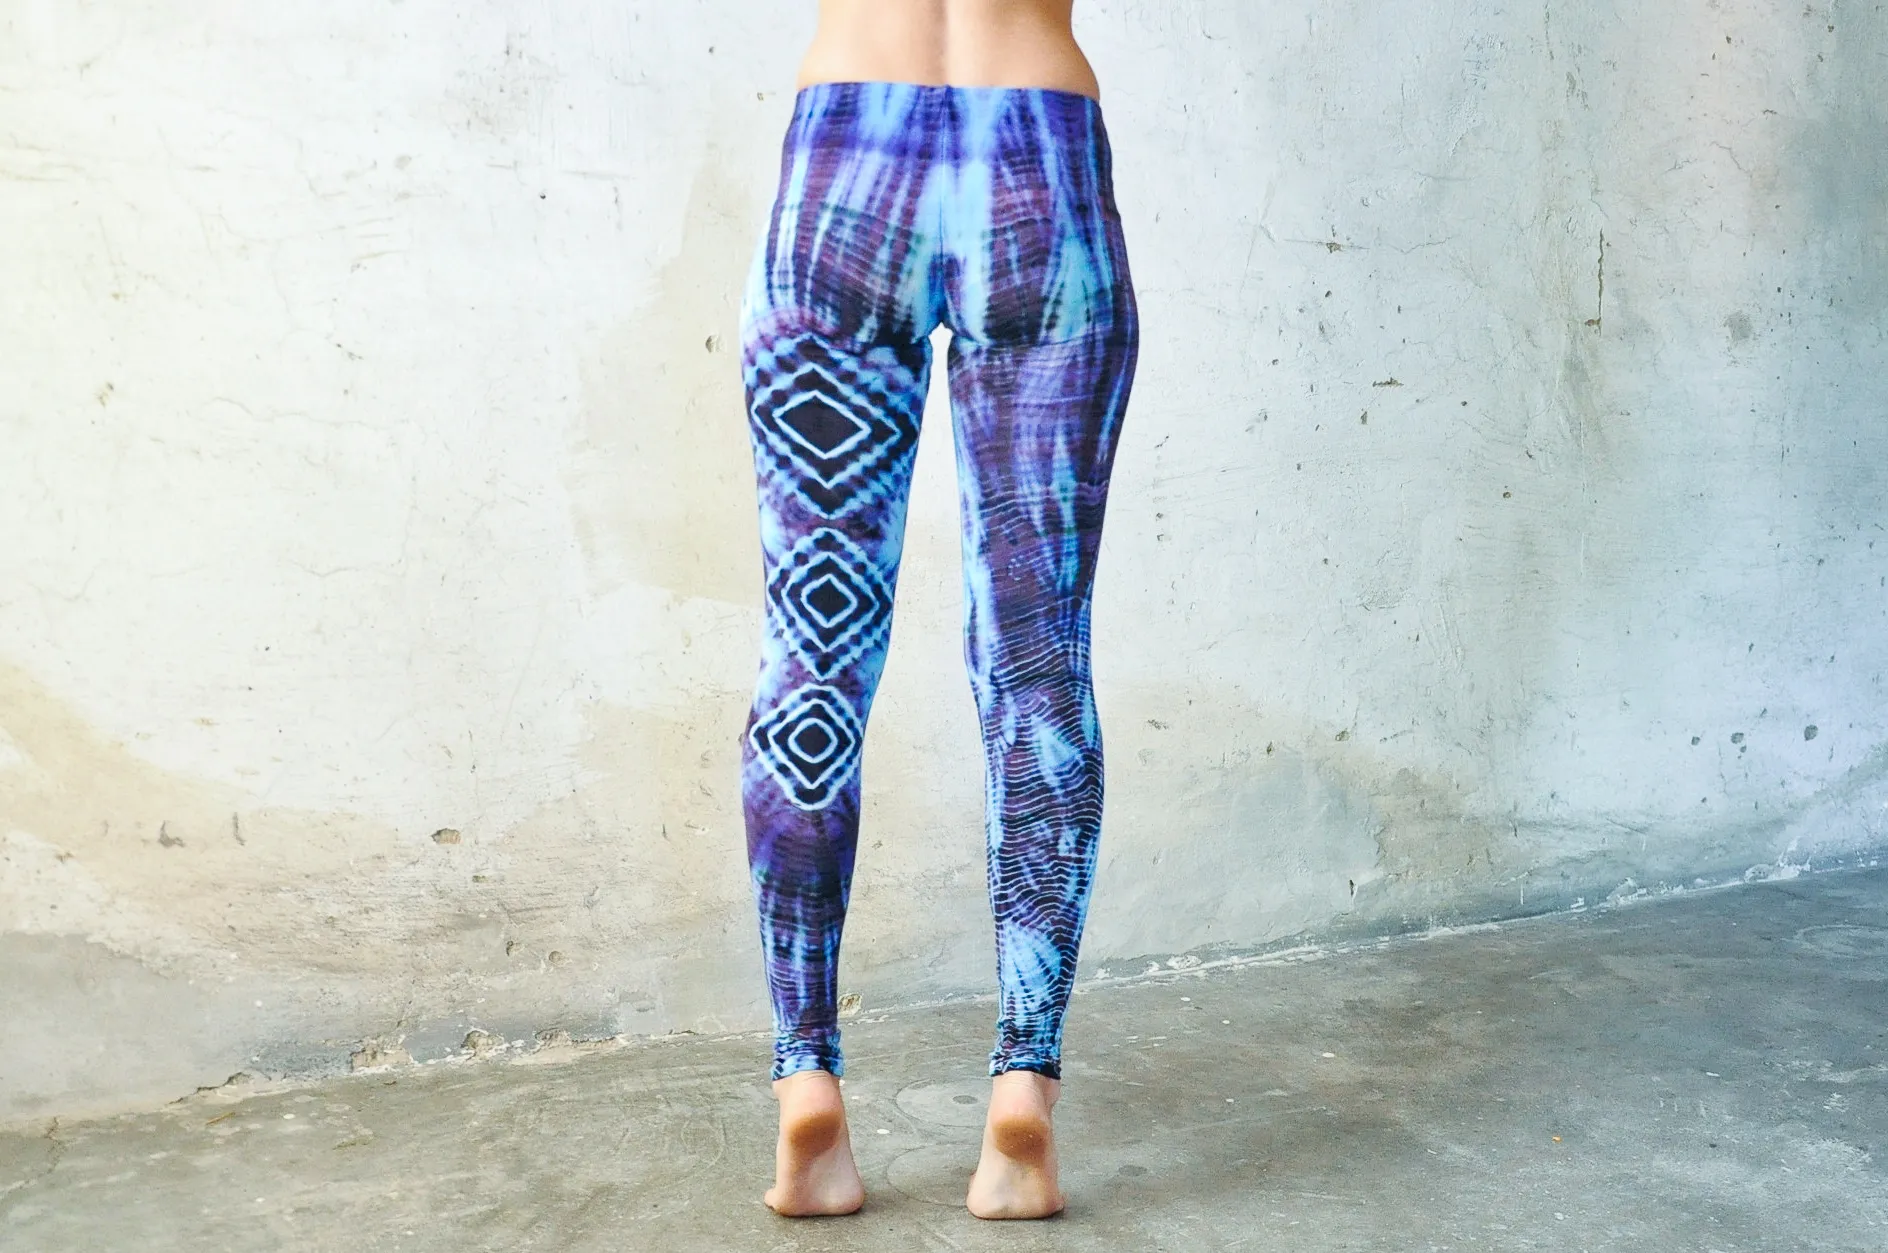 LEGGINGS with an abstract diamond Pattern - Batik, Tie-Dye - unisex - light  blue-purple